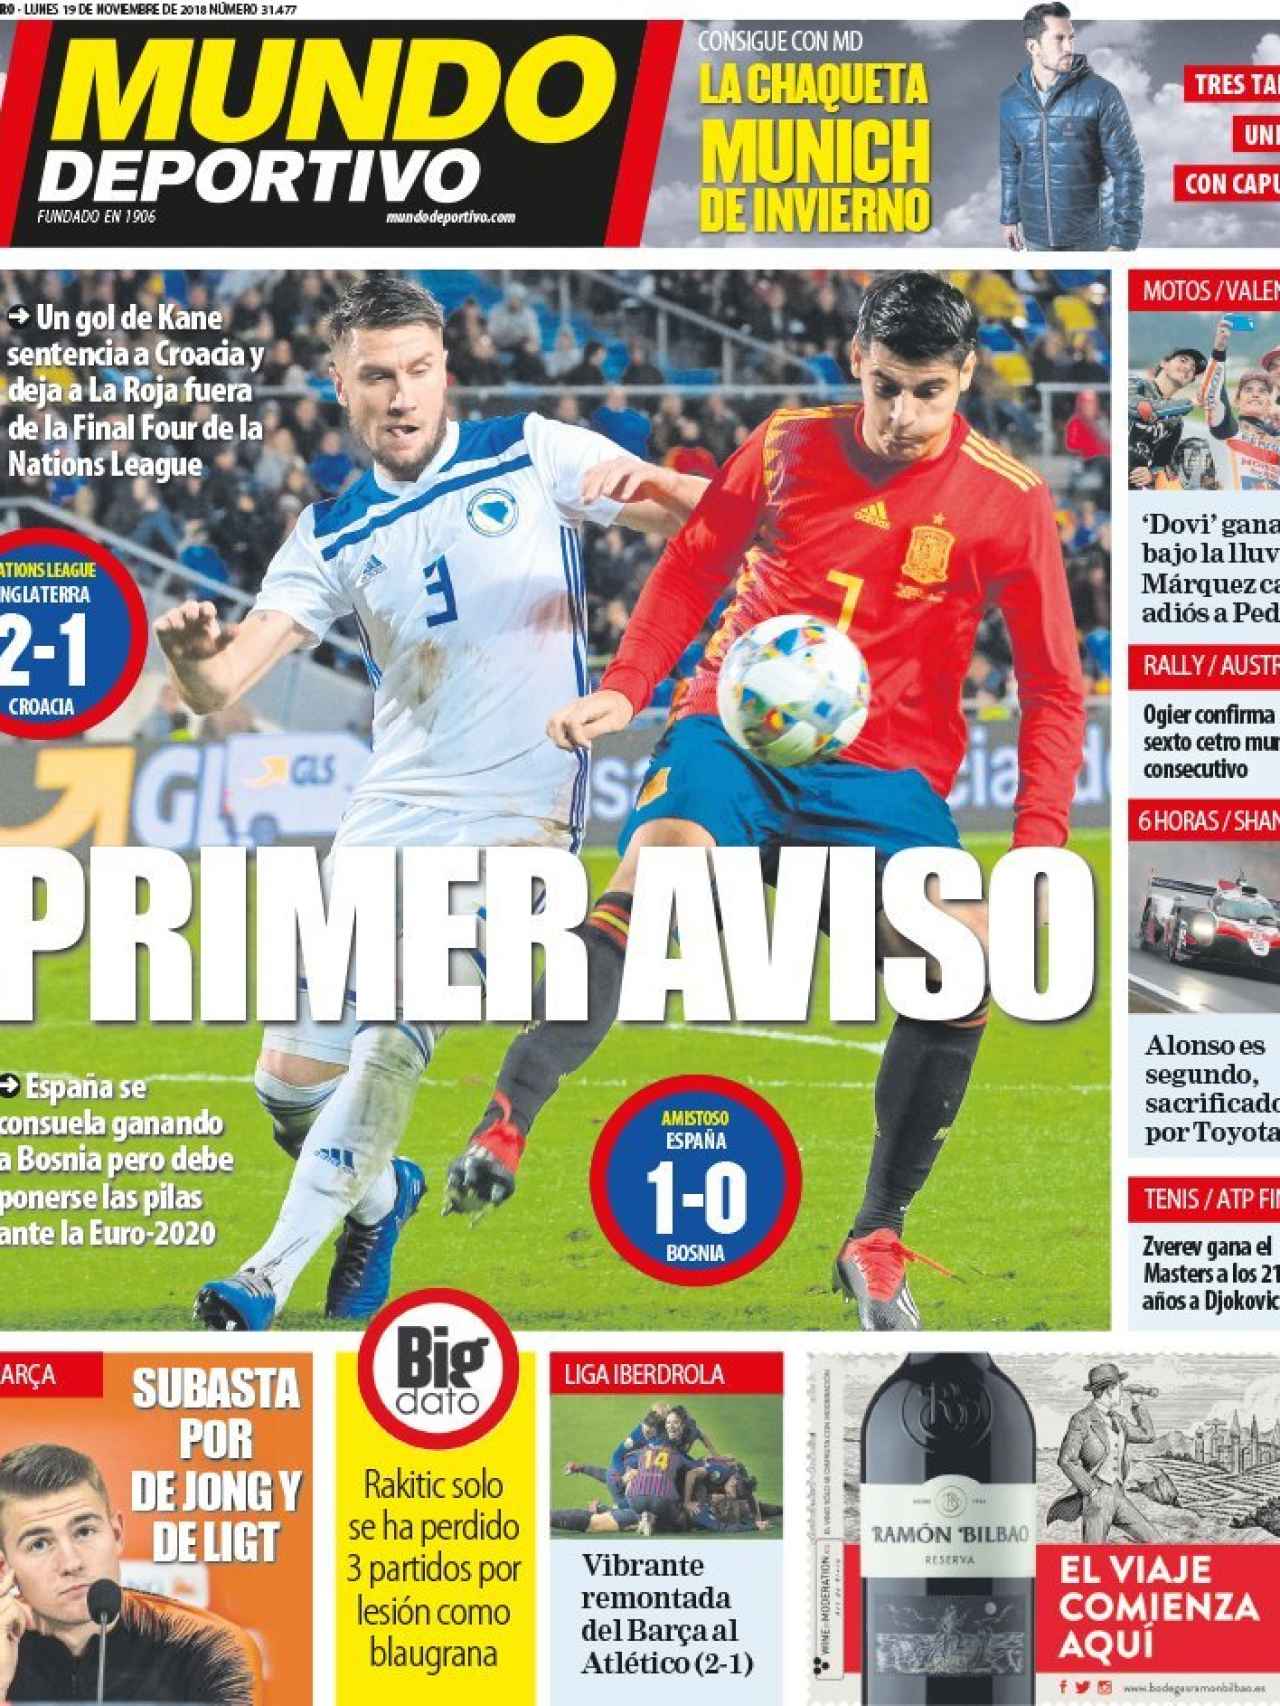 La portada del diario Mundo Deportivo (19/11/2018)